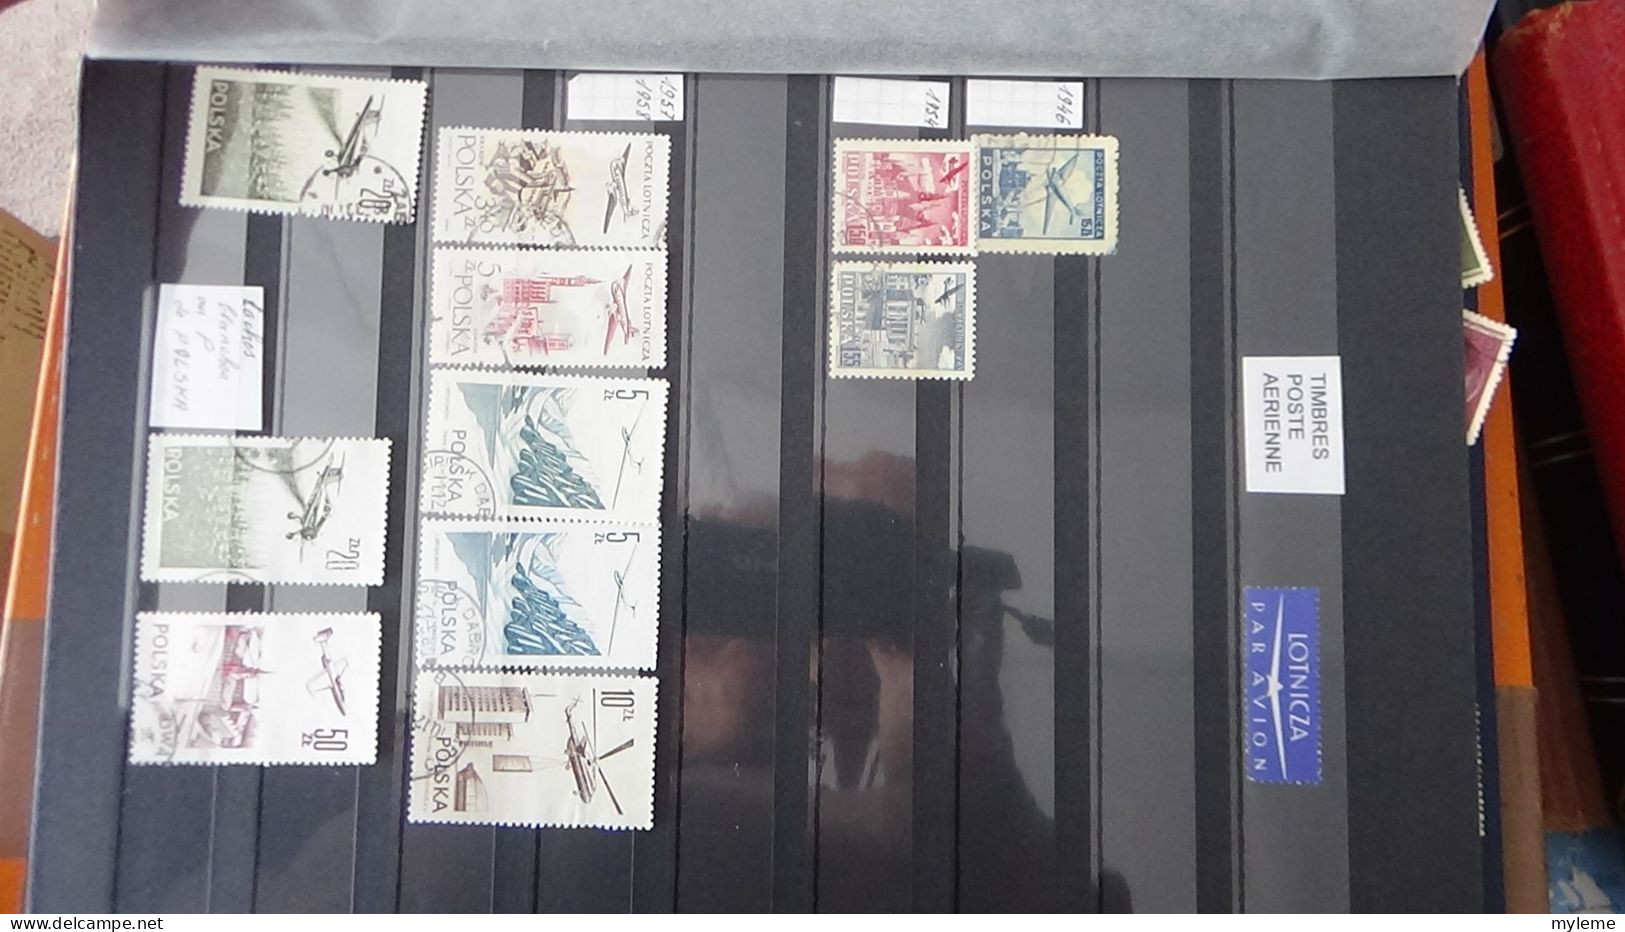 BF36 Ensemble de timbres de divers pays + France N° 182 ** Surcharge garantie authentique  Cote 980 euros